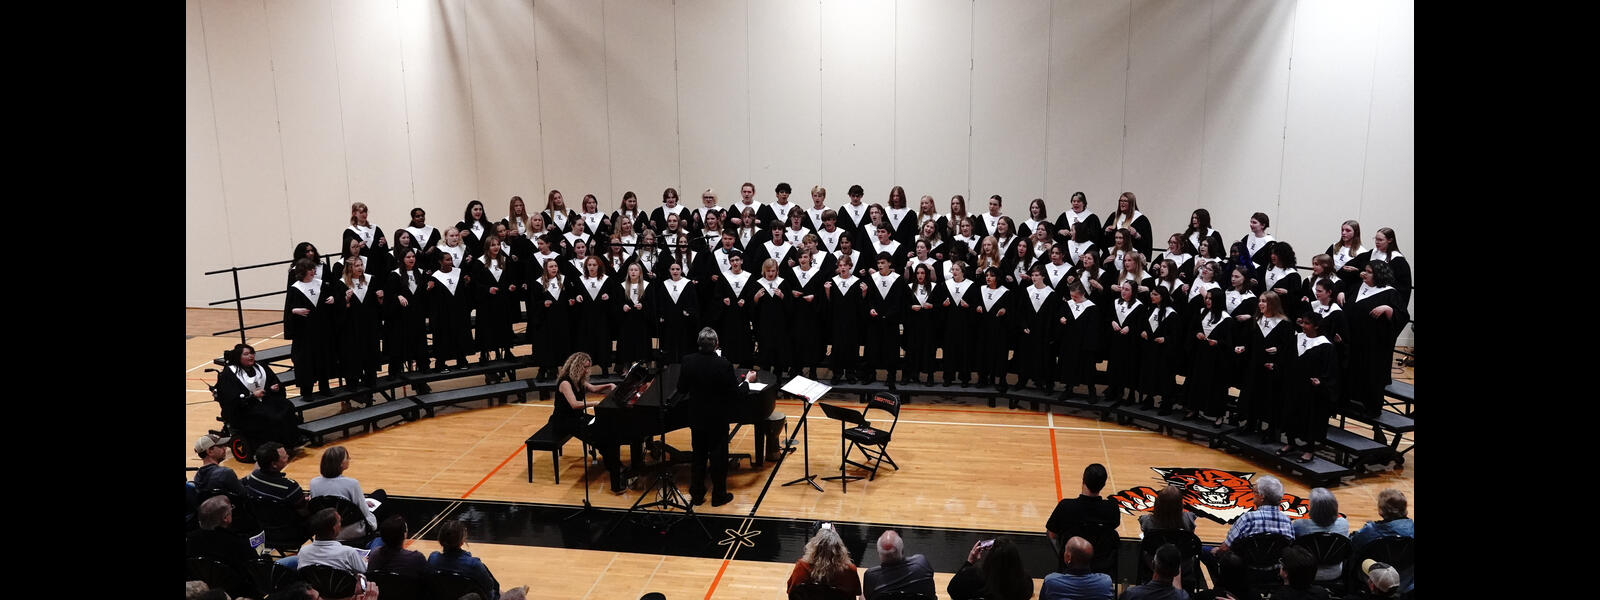 LHS Fall Choir Concert